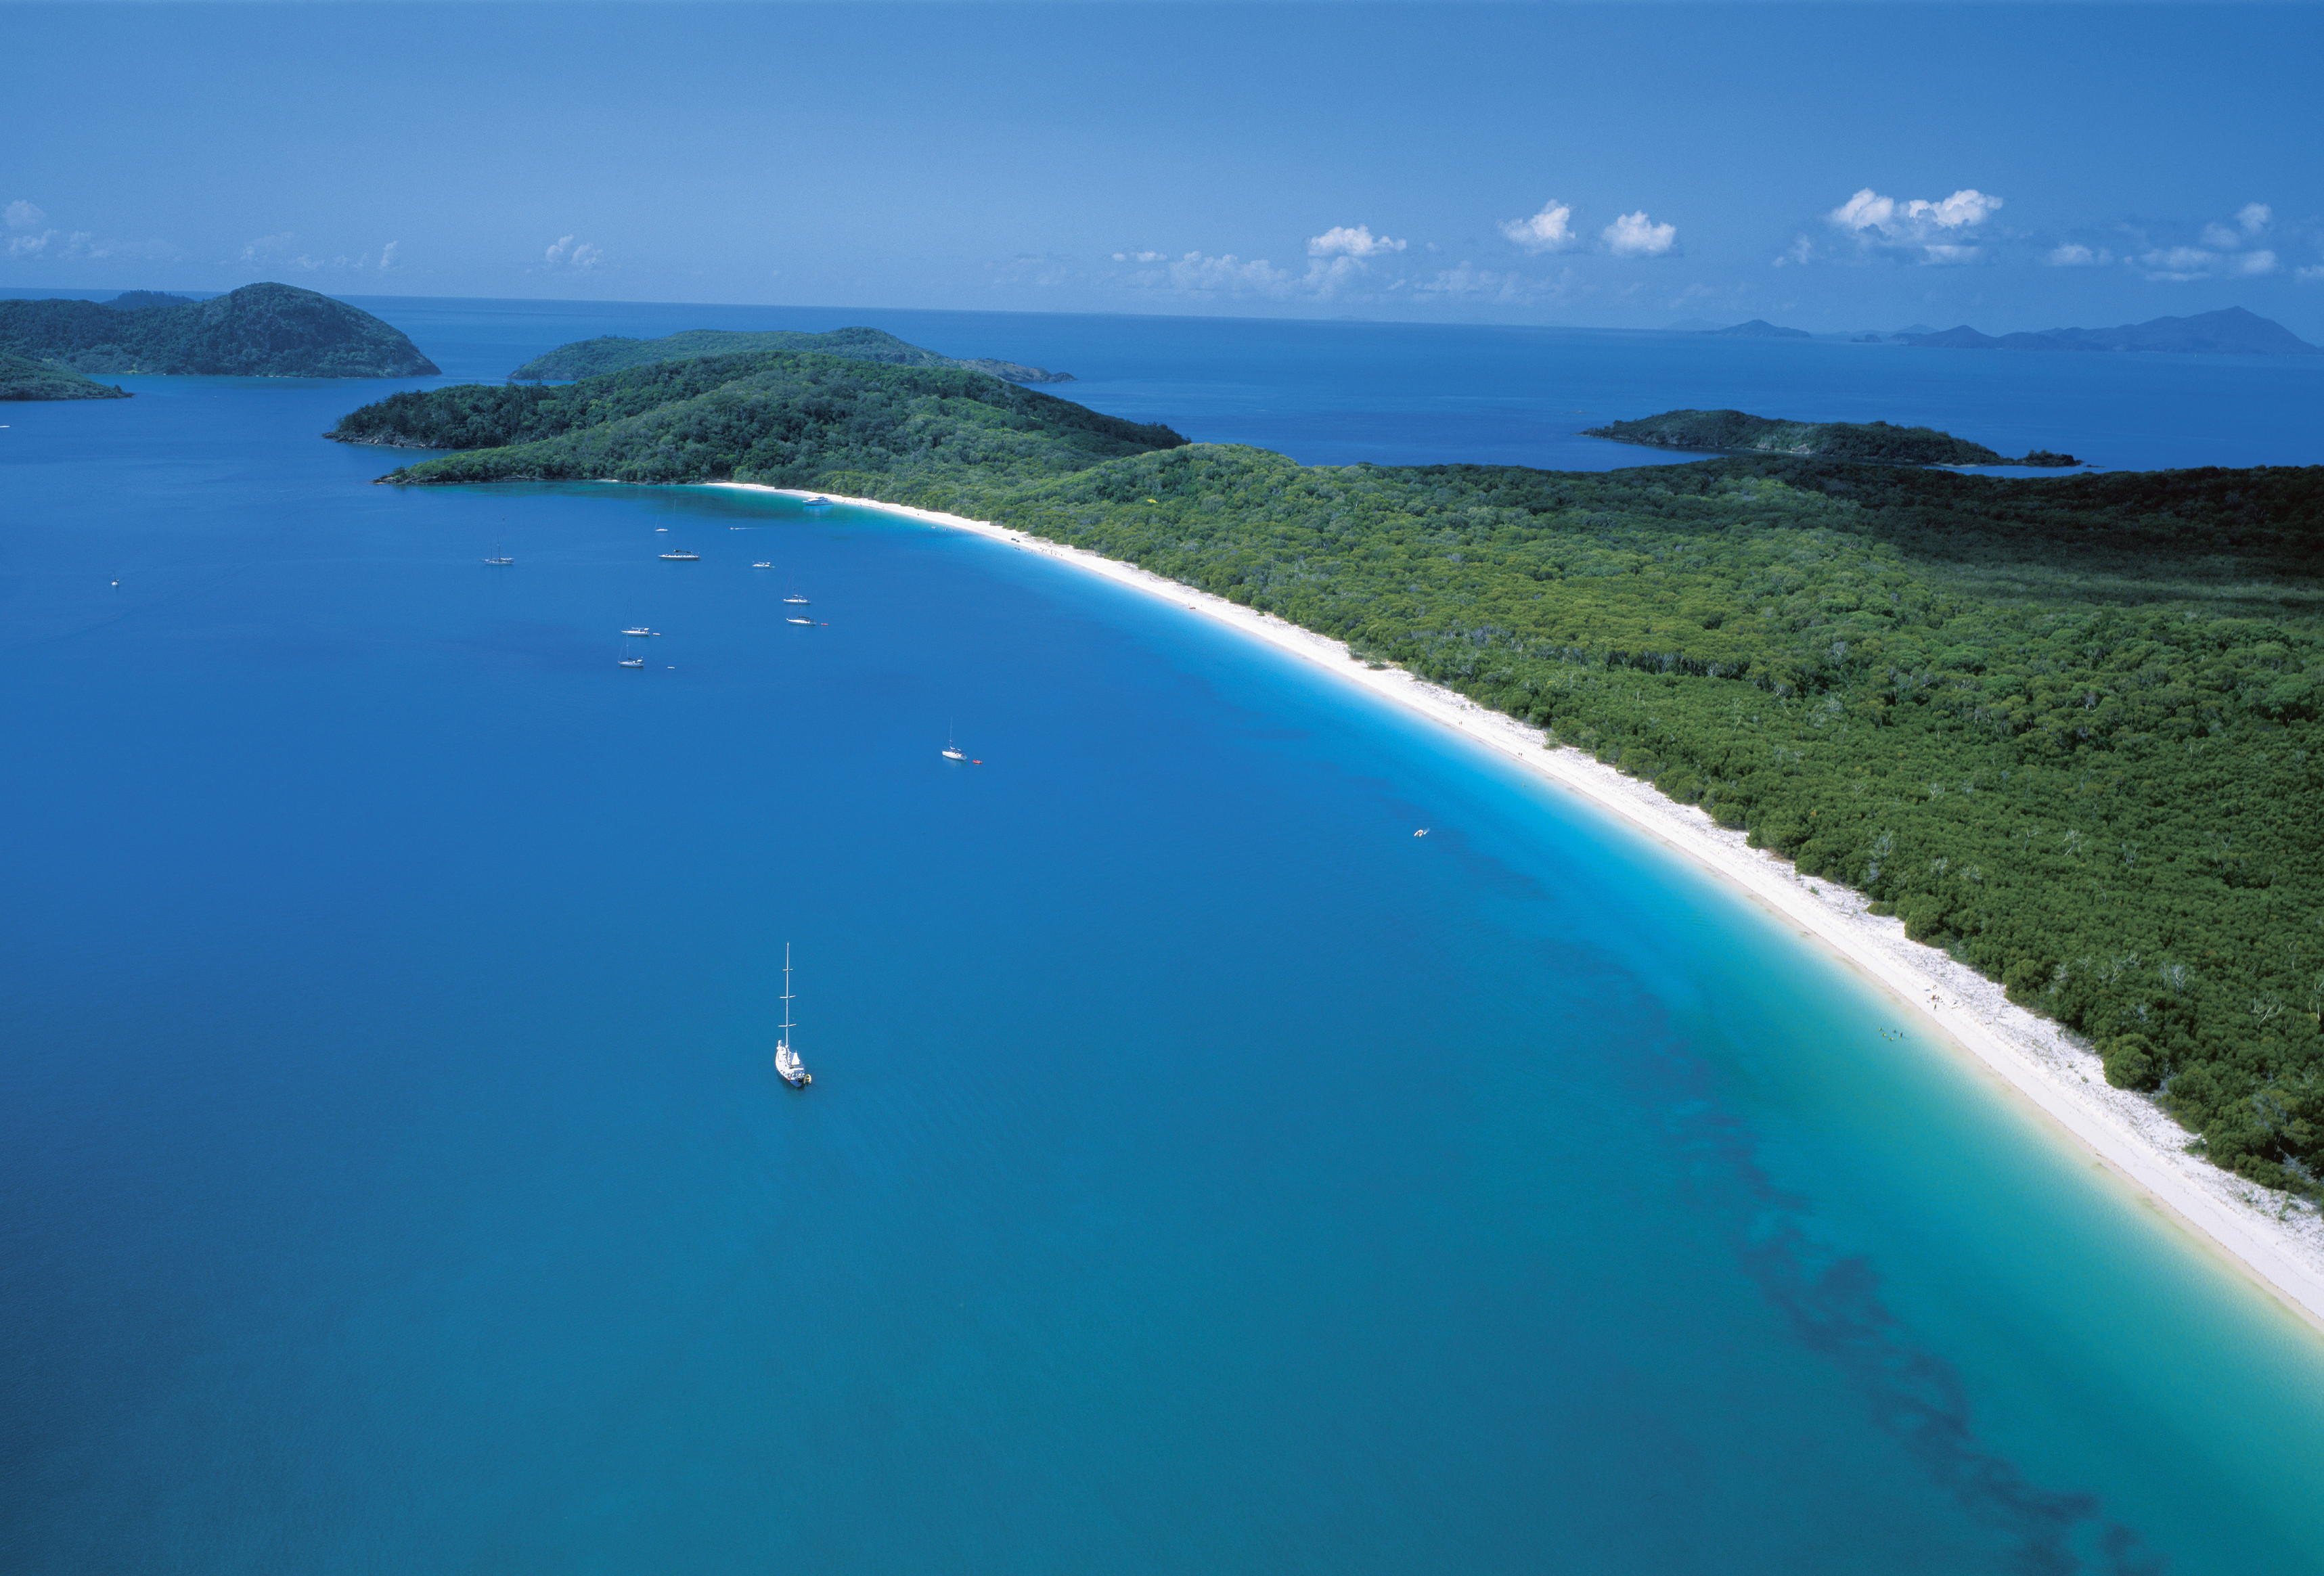 美麗的島嶼是澳大利亞最著名的目的地之一